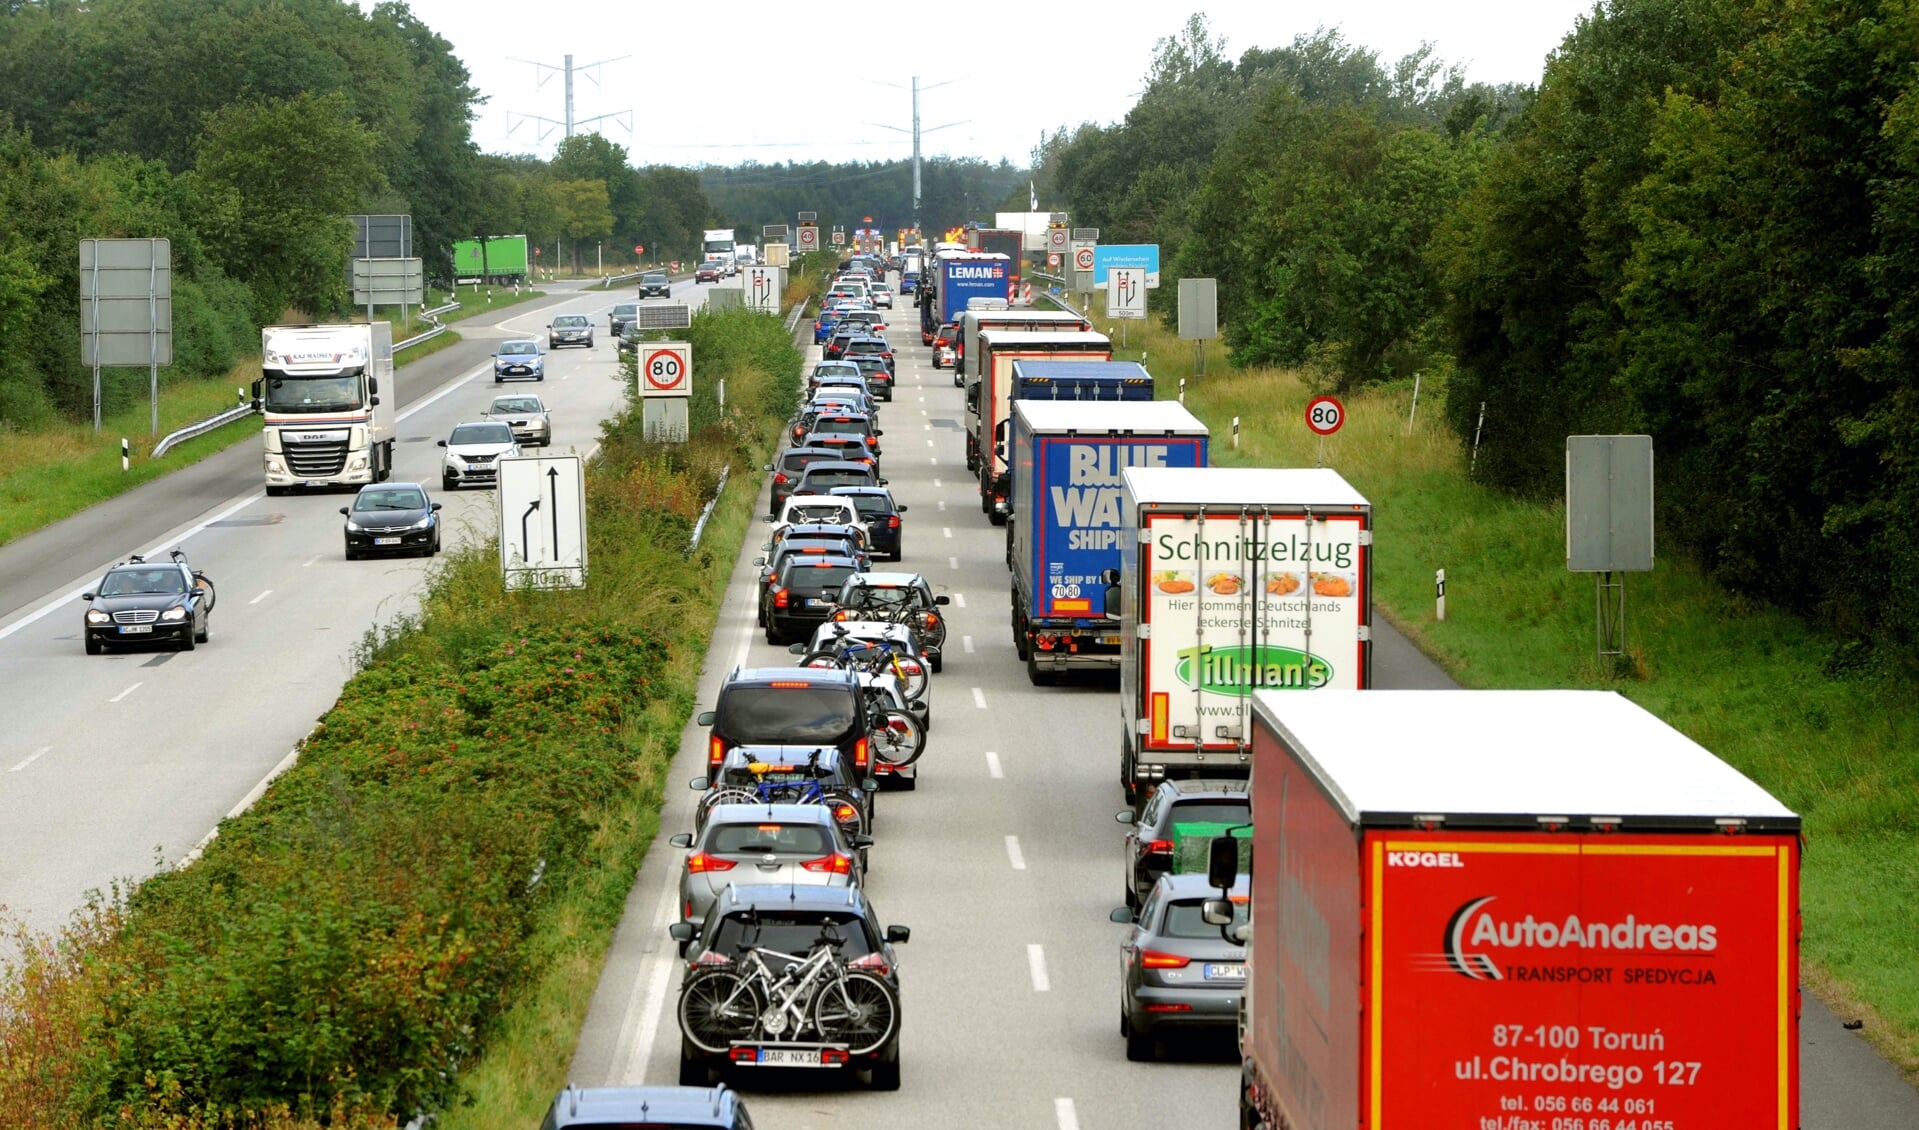 Der foretages stikprøvekontroller ved grænsen til Danmark, og det gav lørdag formiddag en del kø på motorvejen.